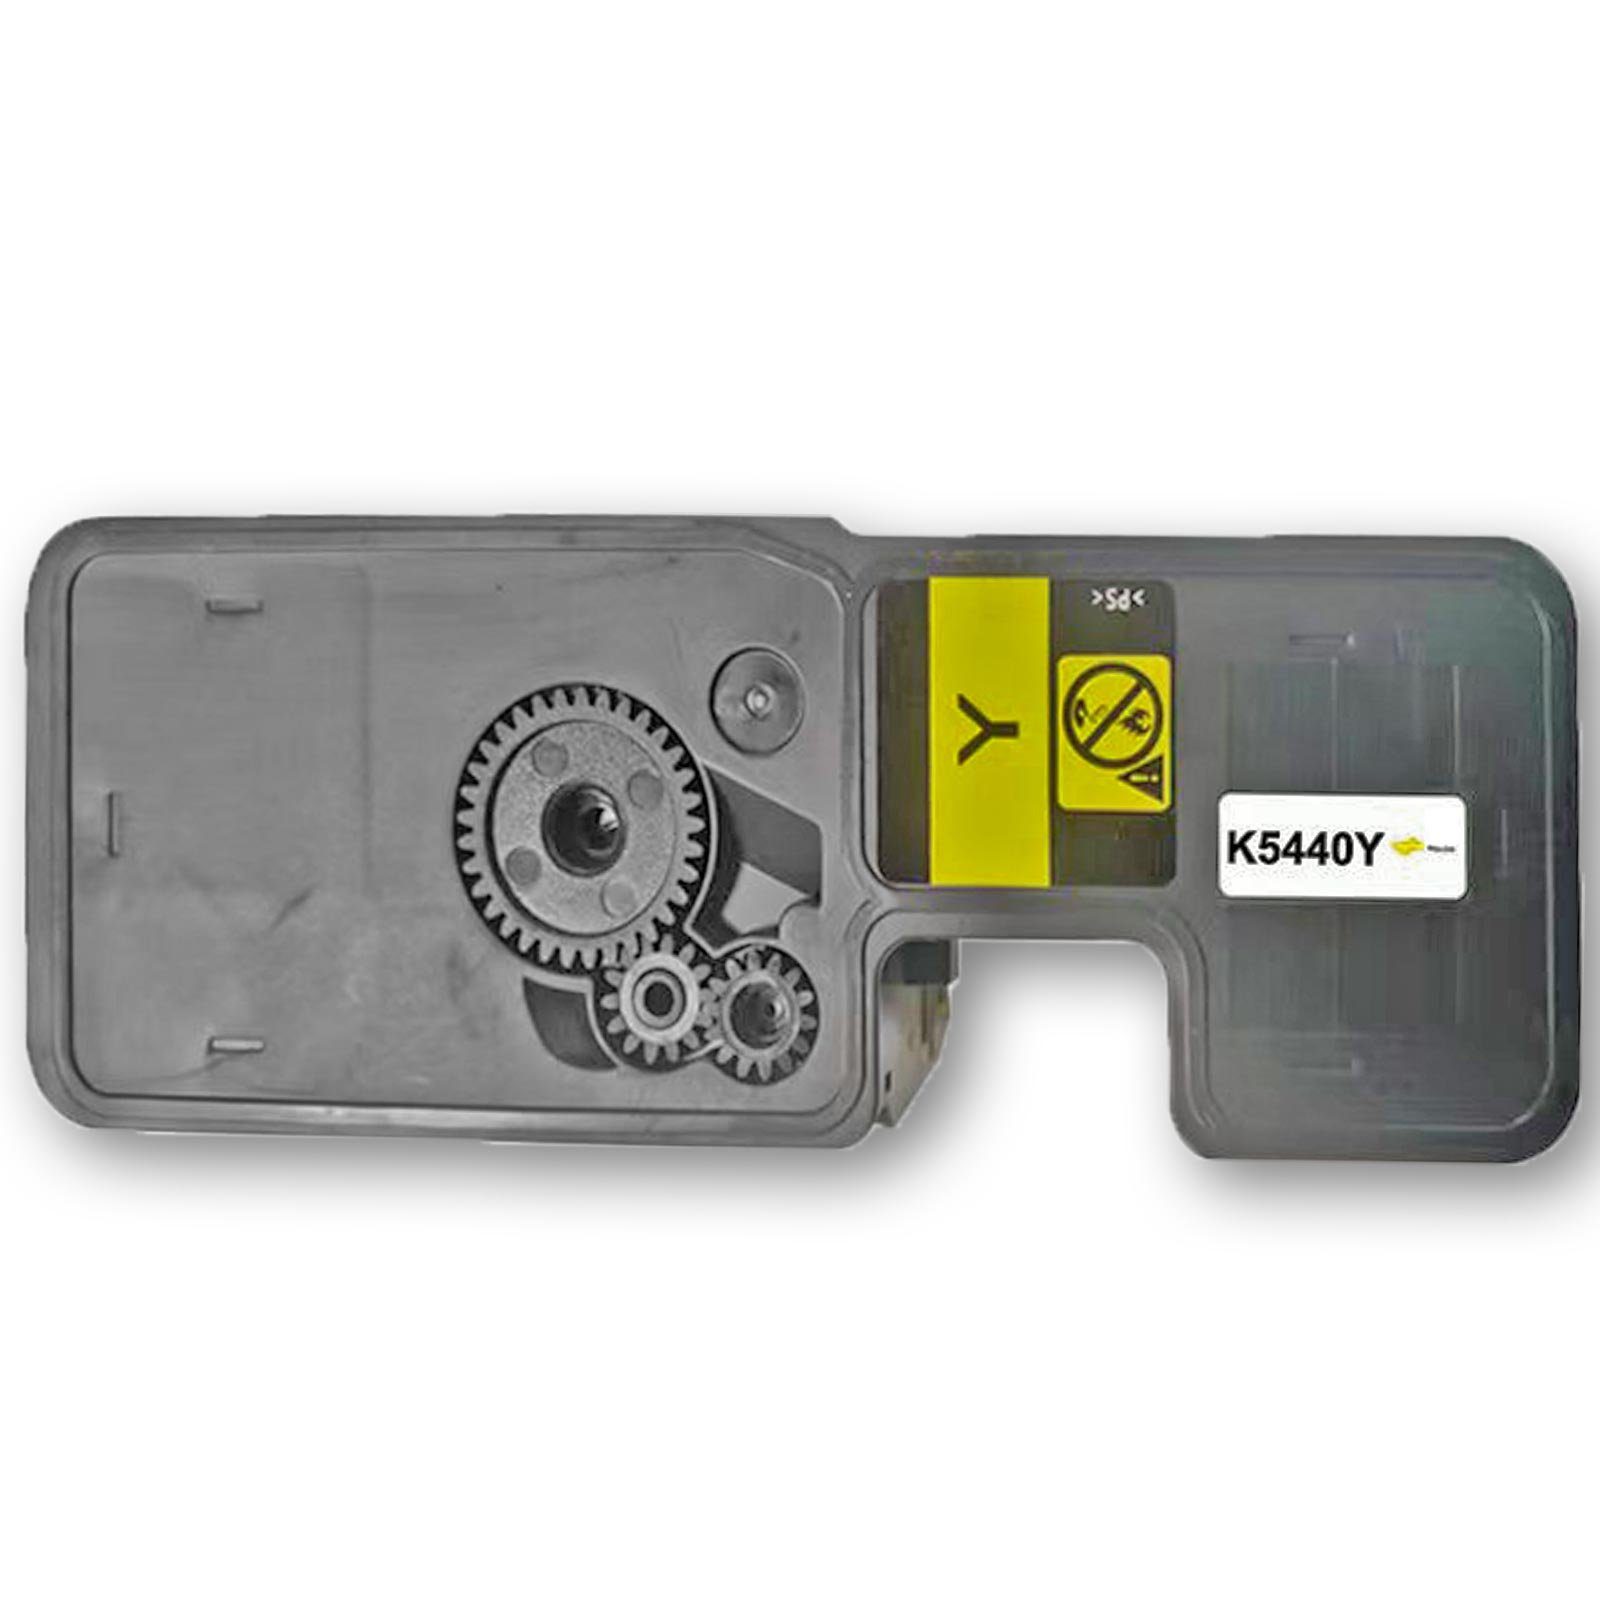 Tonerkartusche Kompatibel Kyocera TK-5440Y Gelb, Lieferumfang: 1x Tonerkassette kompatibel zu Kyocera TK-5440Y | Tonerpatronen